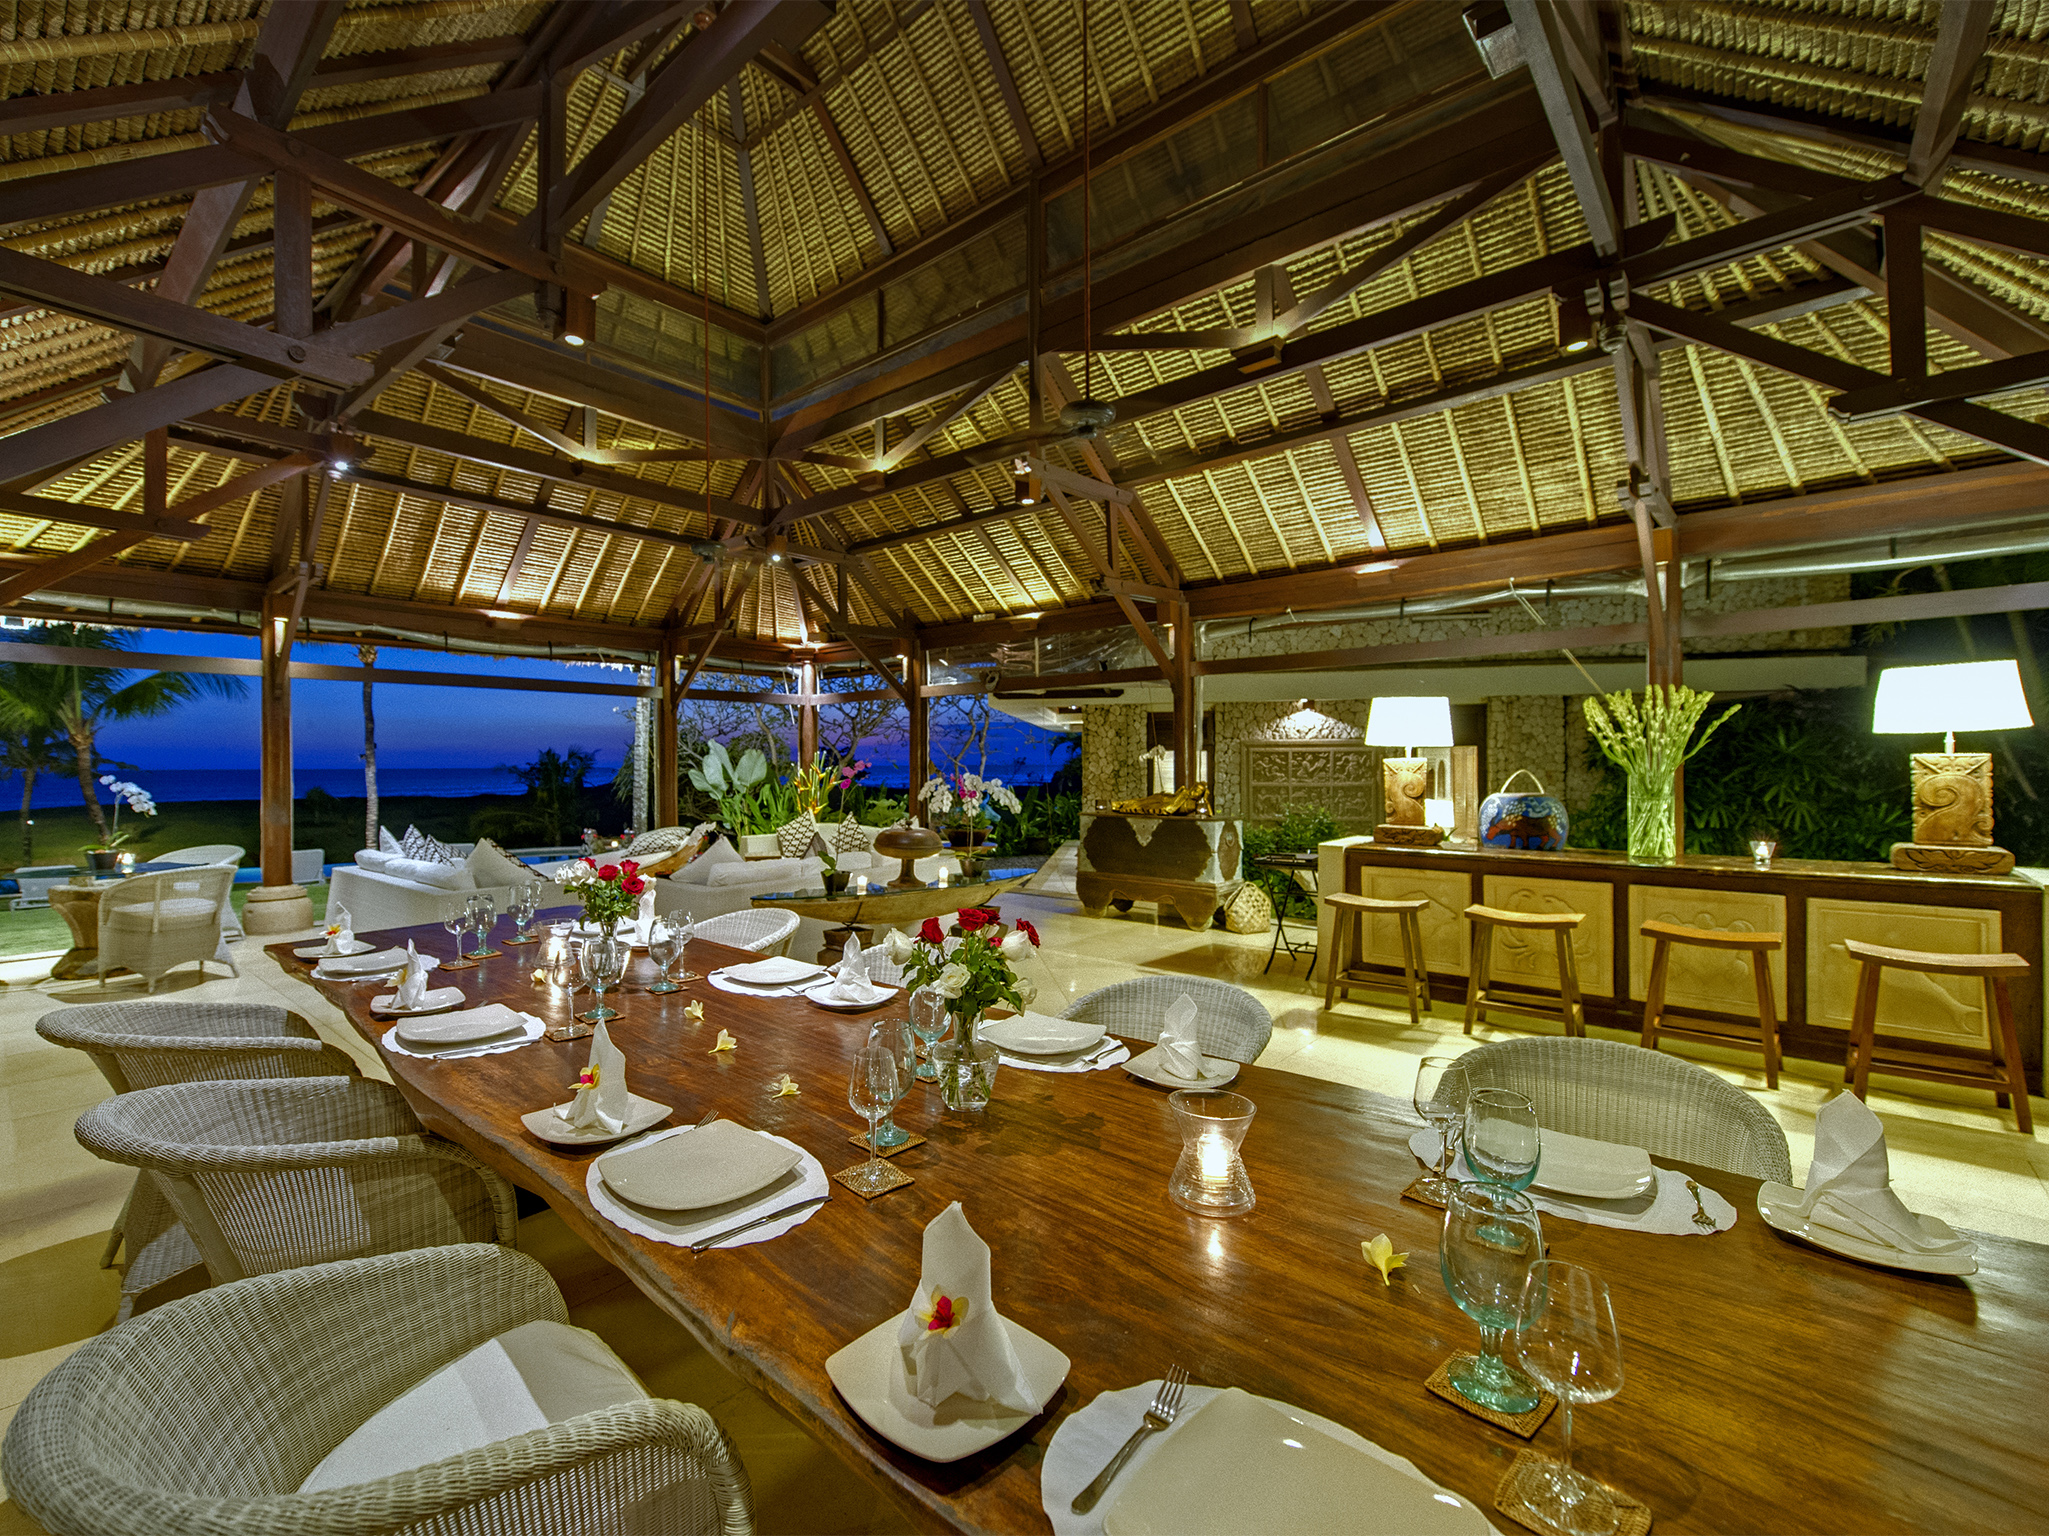 Villa Sungai Tinggi - Dining room at night - Sungai Tinggi Beach Villa, Canggu, Bali